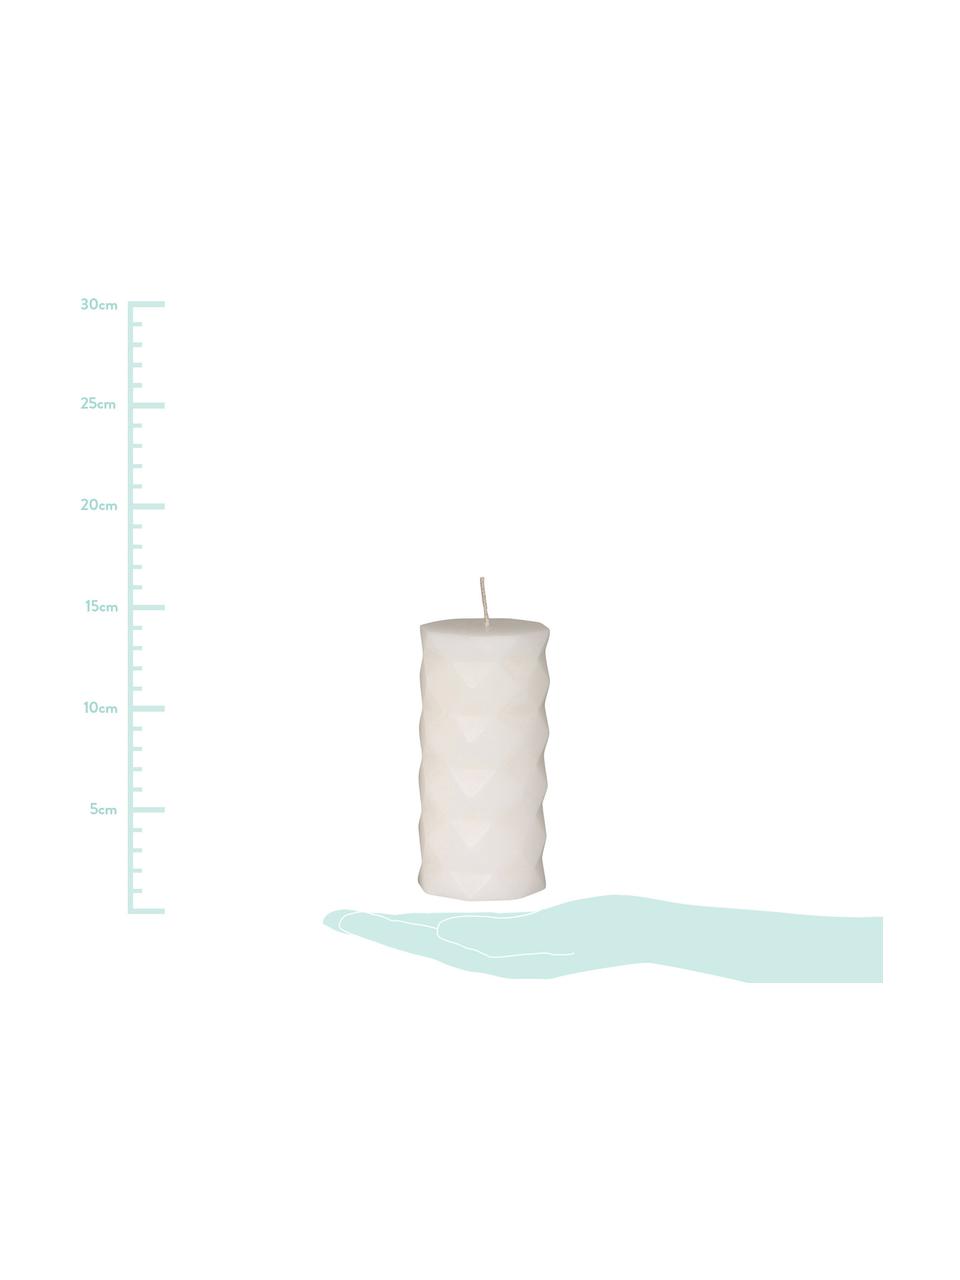 Set candele cilindriche Mix Rhomb, 6 pz, 95% paraffina, 5% cera di soia, Bianco, Ø 7 x A 14 cm